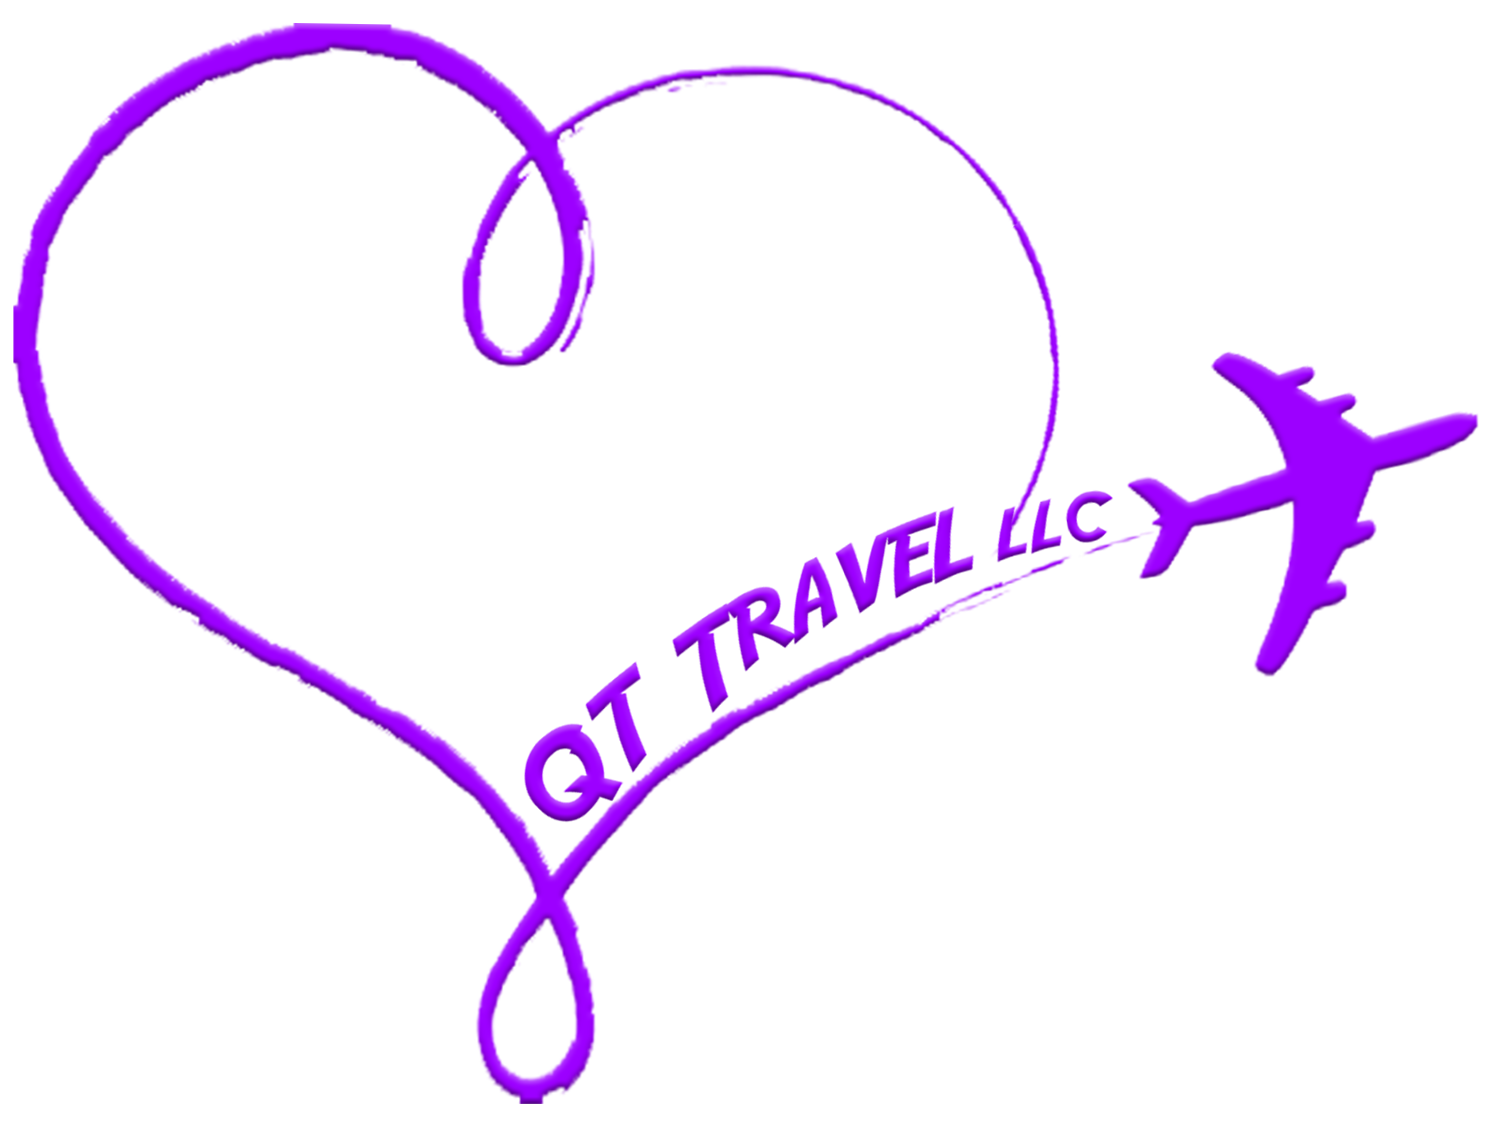 QT Travel LLC